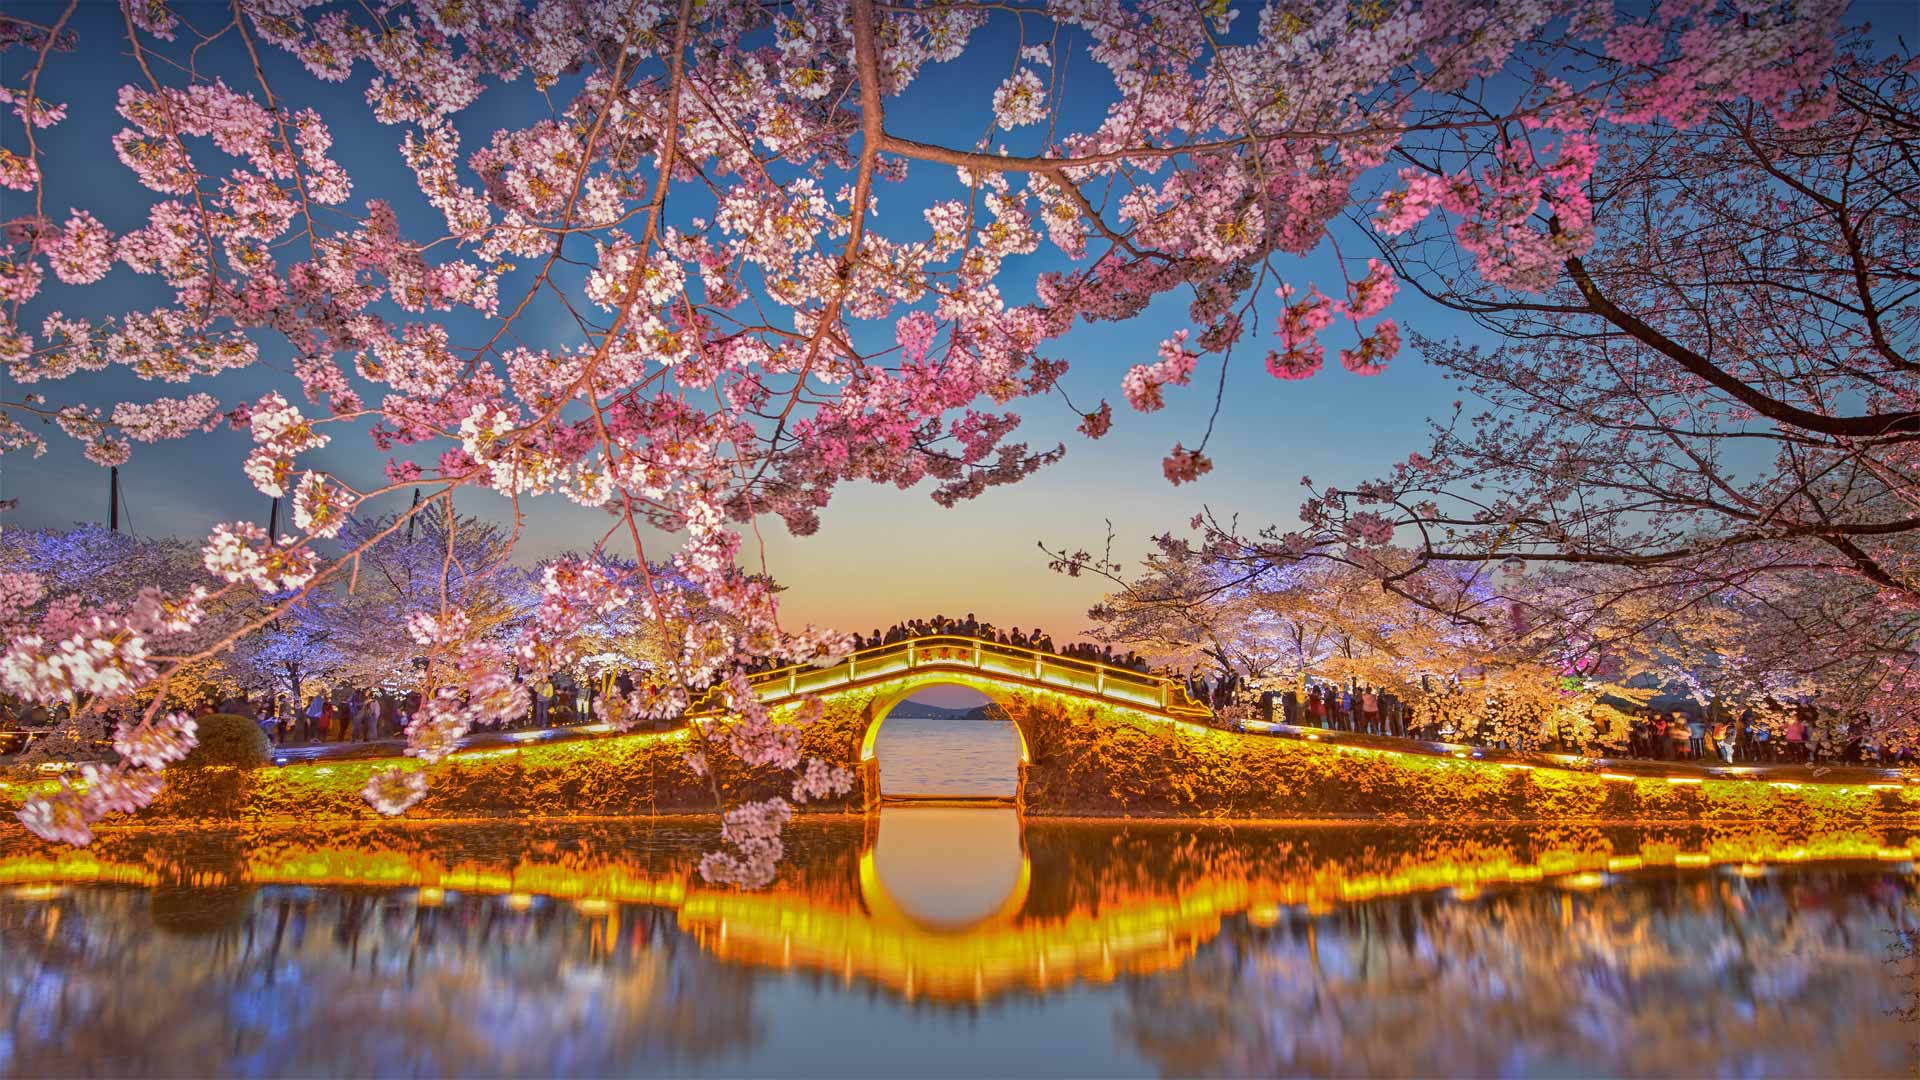 Cherry blossoms at Lake Tai at Wuxi, China - Eric Yang/Getty Images)